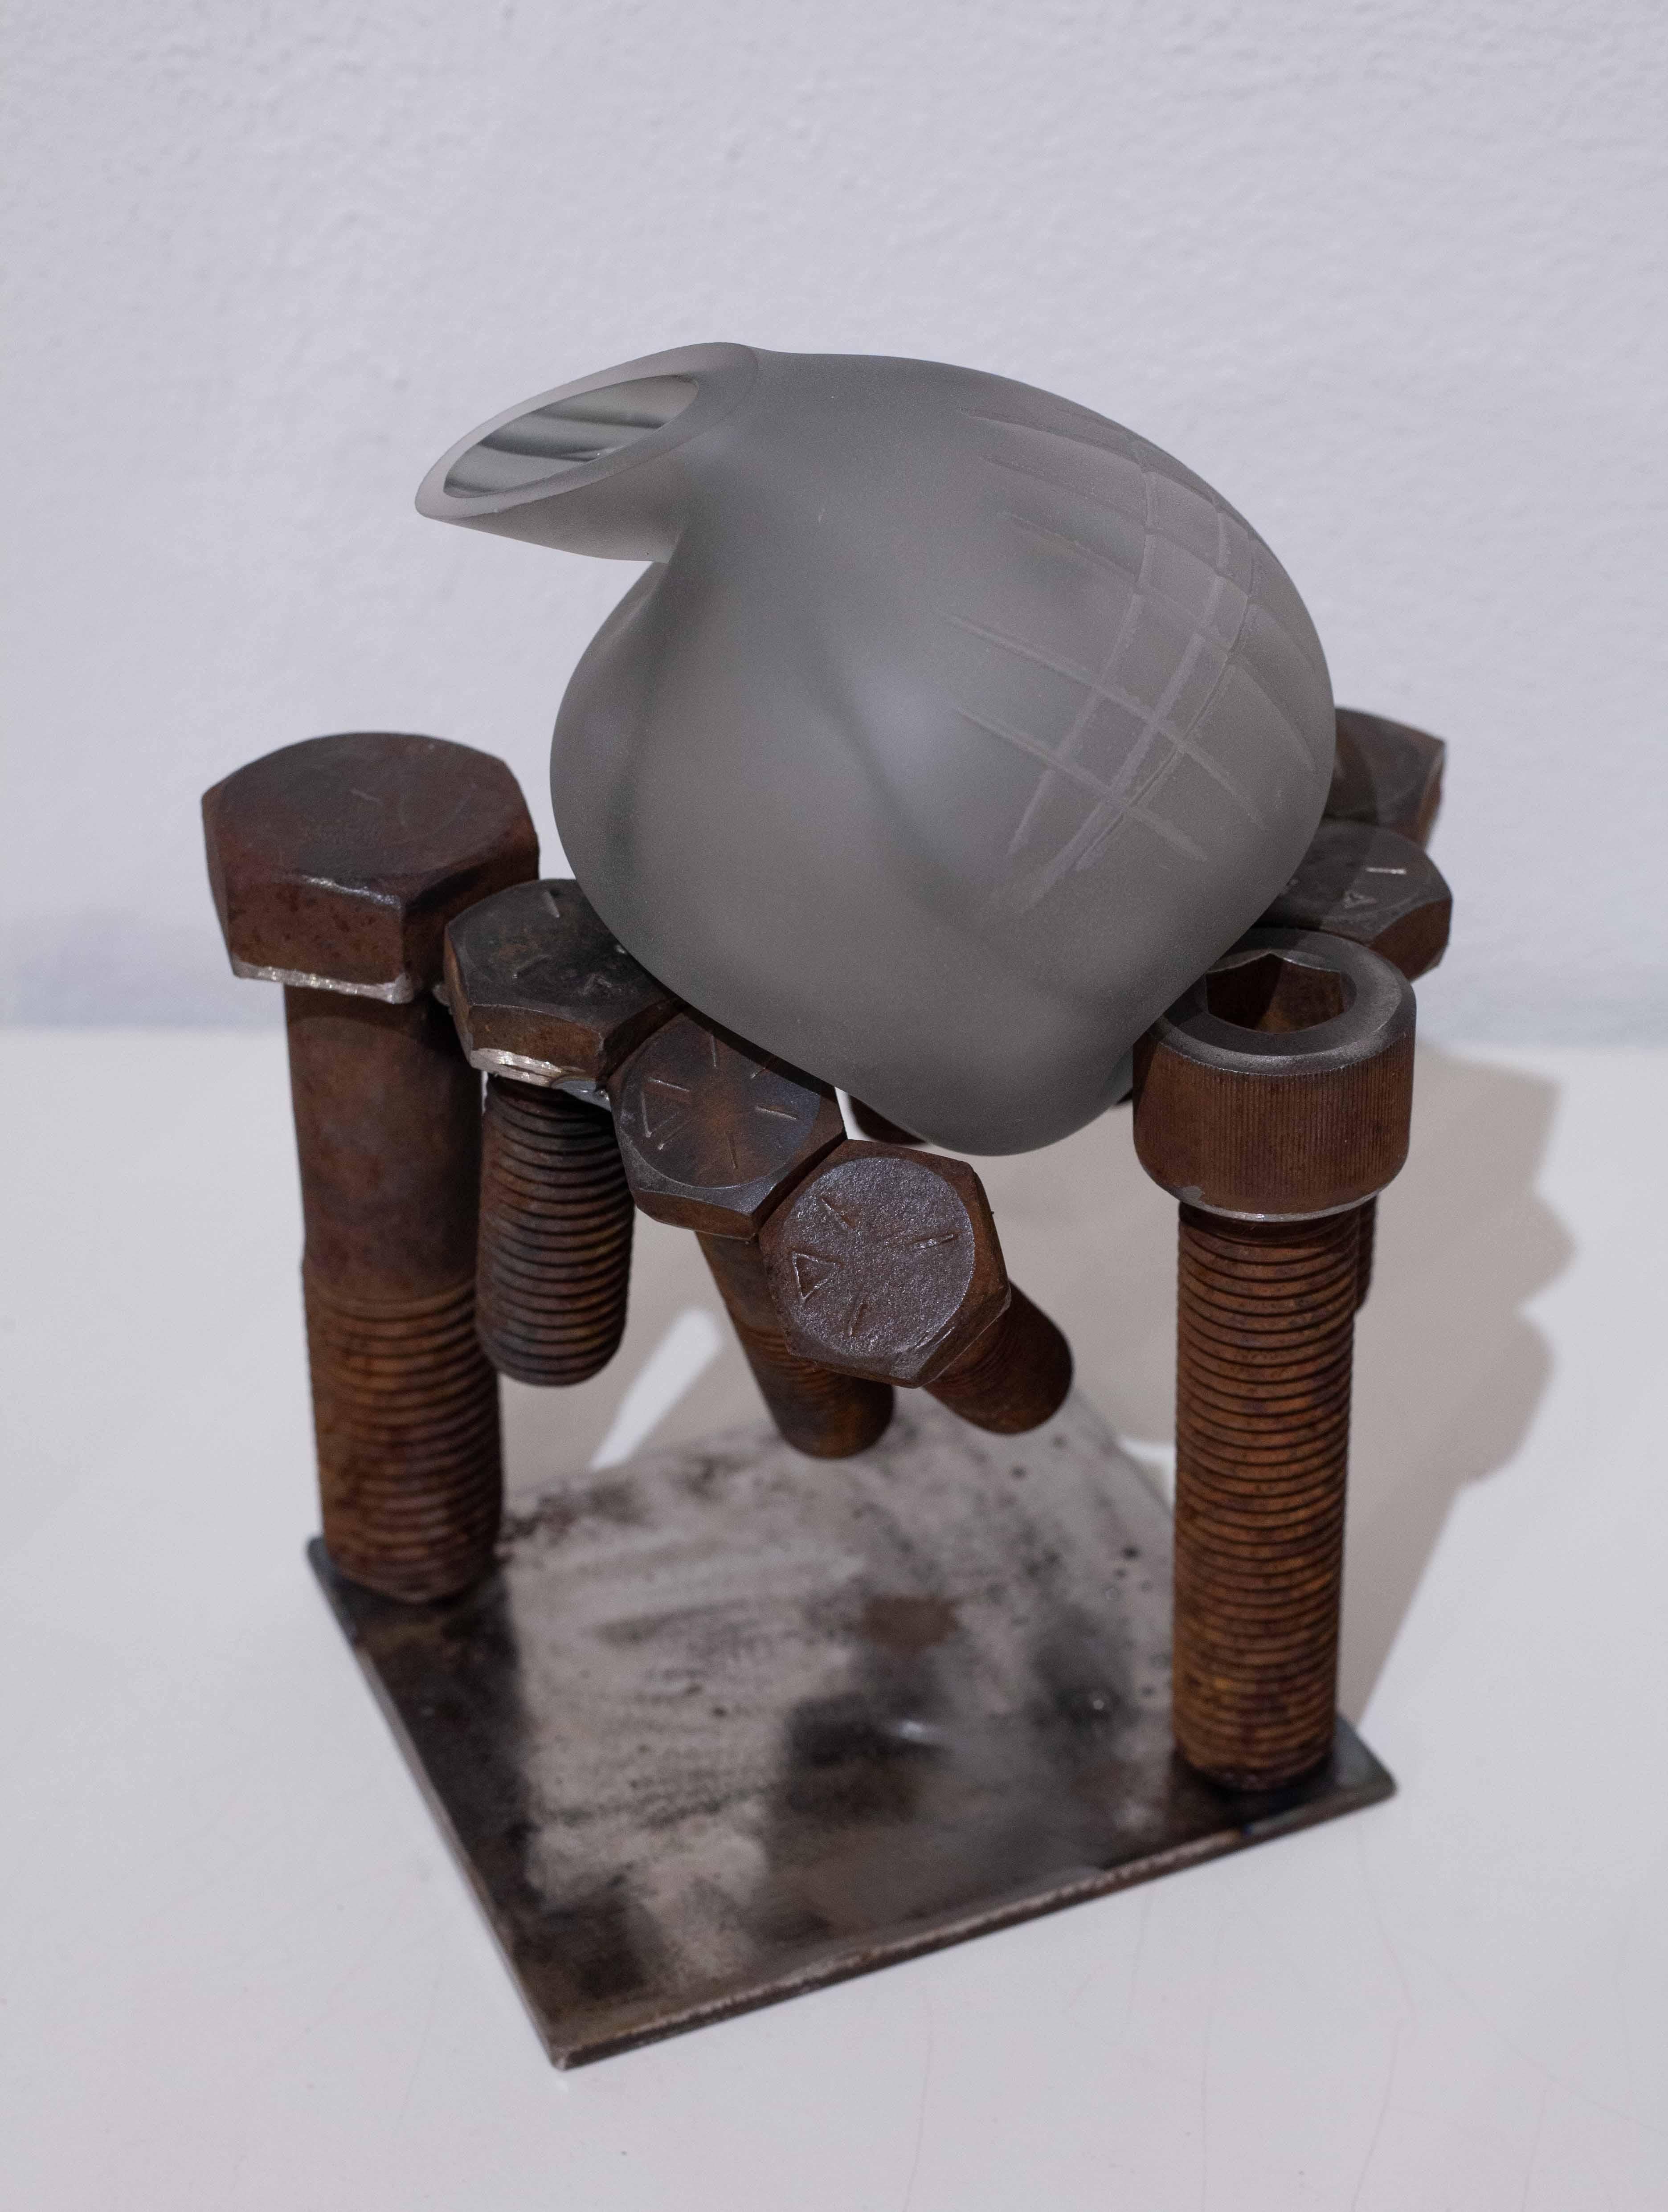 Bolt Study (blown glass design craft steel organic texture metal sculpture rust) - Mixed Media Art by Robert Burch